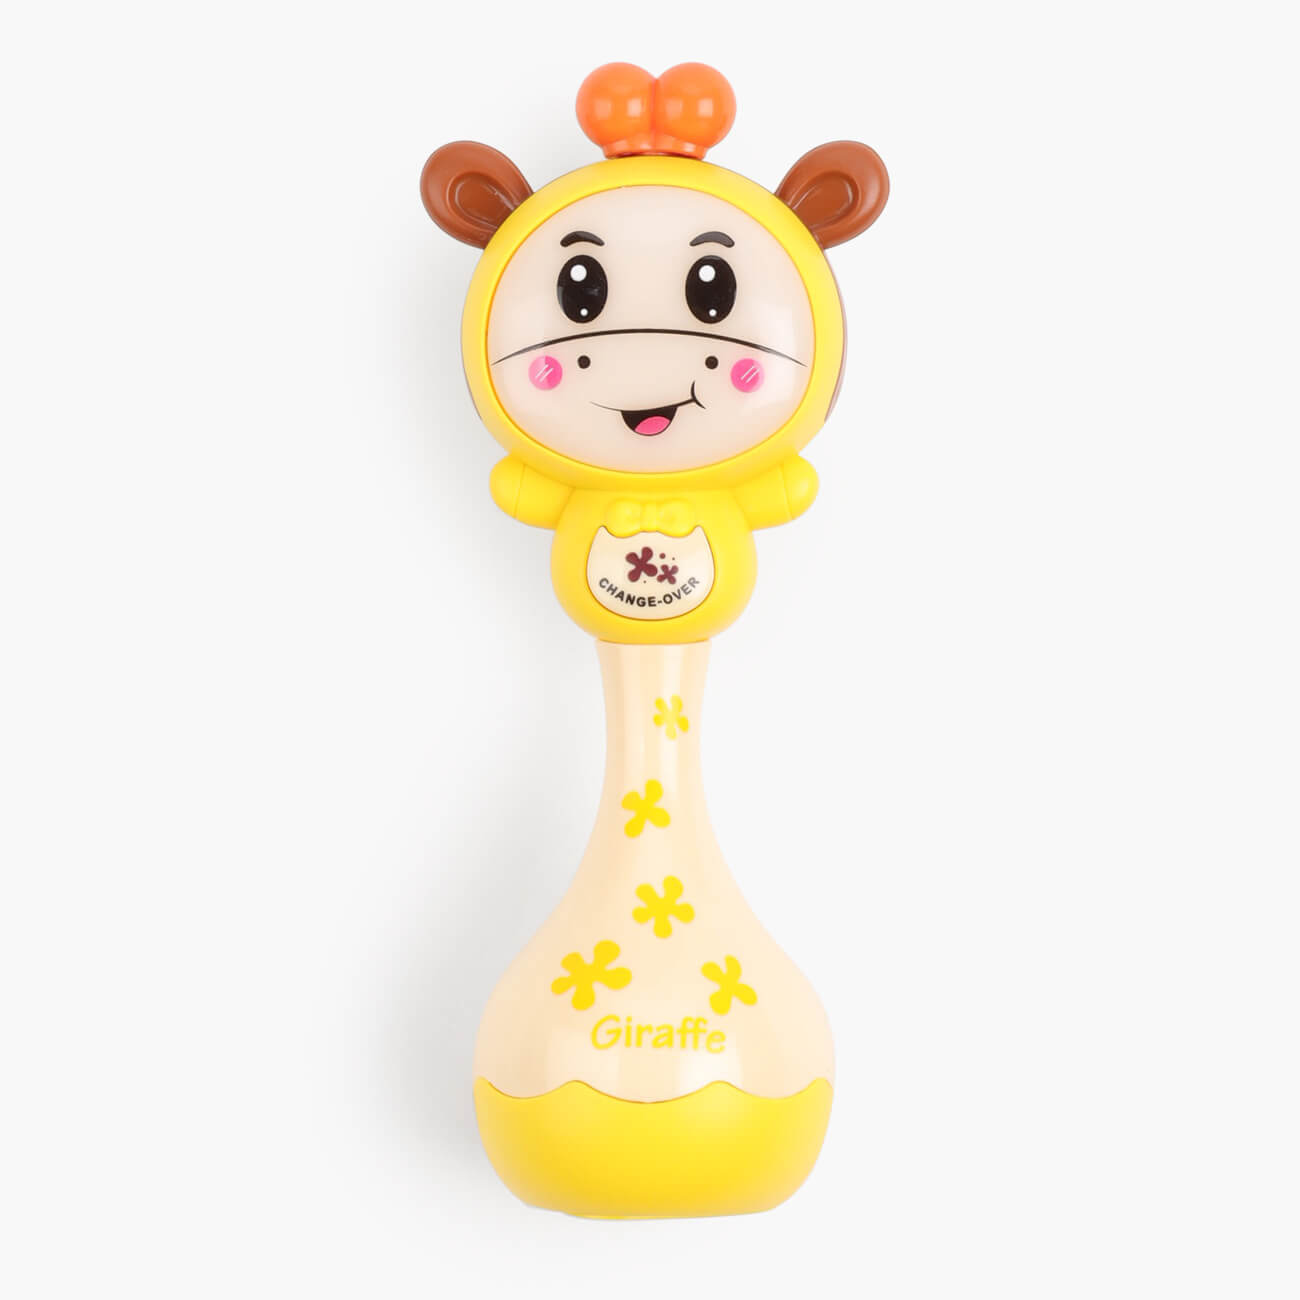 Игрушка развивающая, 15х6 см, музыкальная, с подсветкой, пластик, желтая, Жирафик, Giraffe развивающая игрушка грелка мишка крошка с вишнёвыми косточками